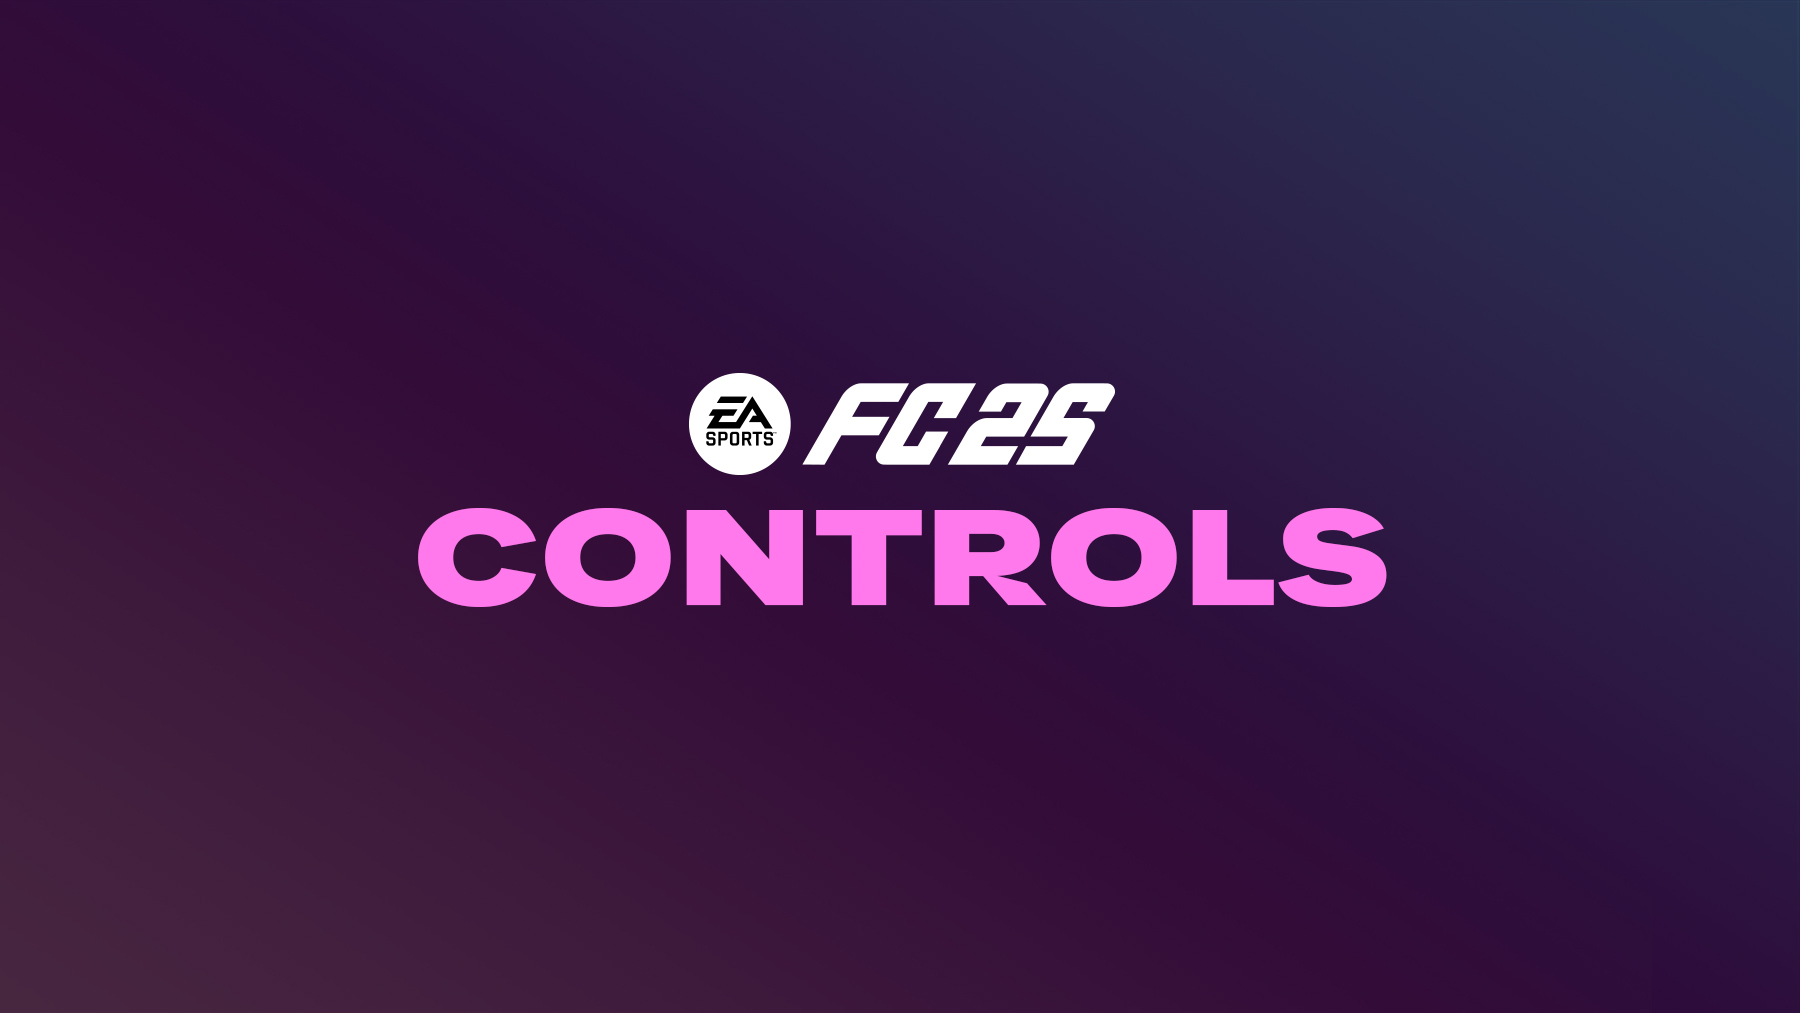 FC 25 Controls